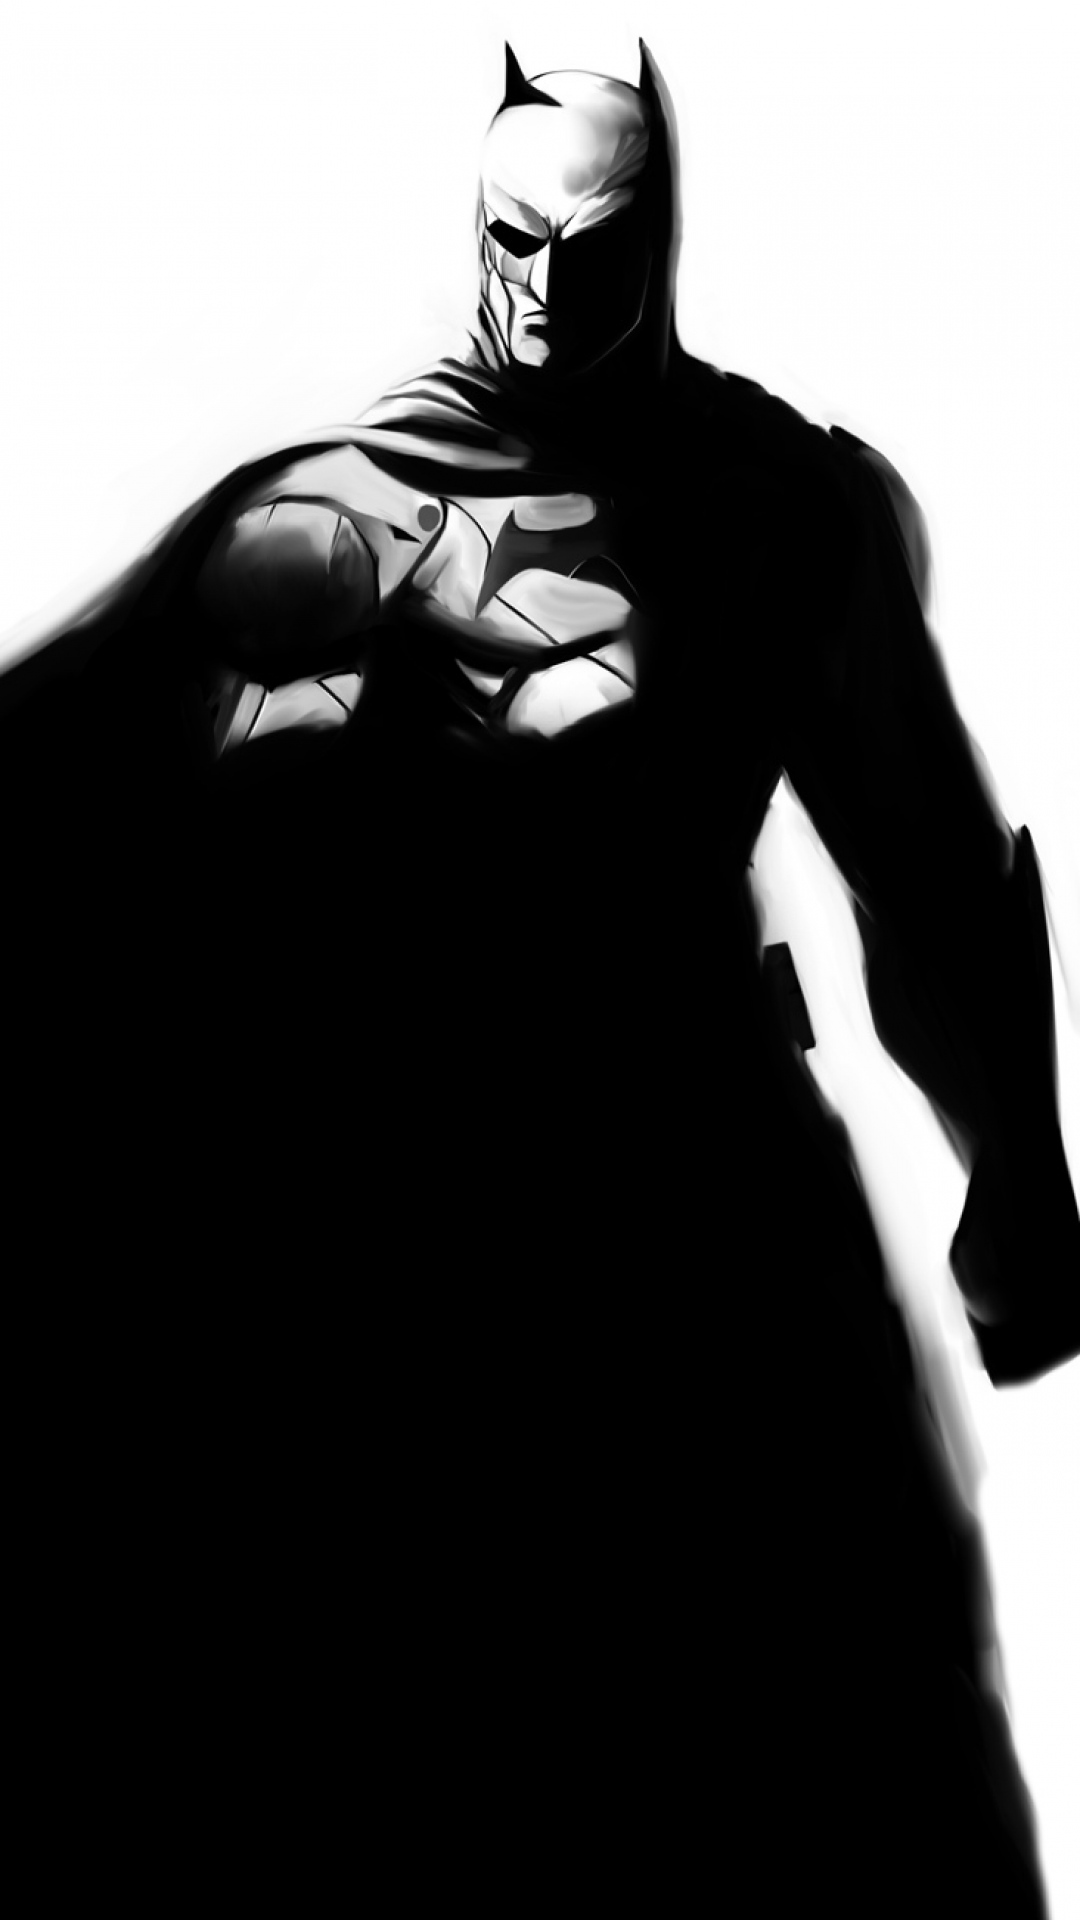 fond d'écran de téléphone batman,homme chauve souris,personnage fictif,super héros,ligue de justice